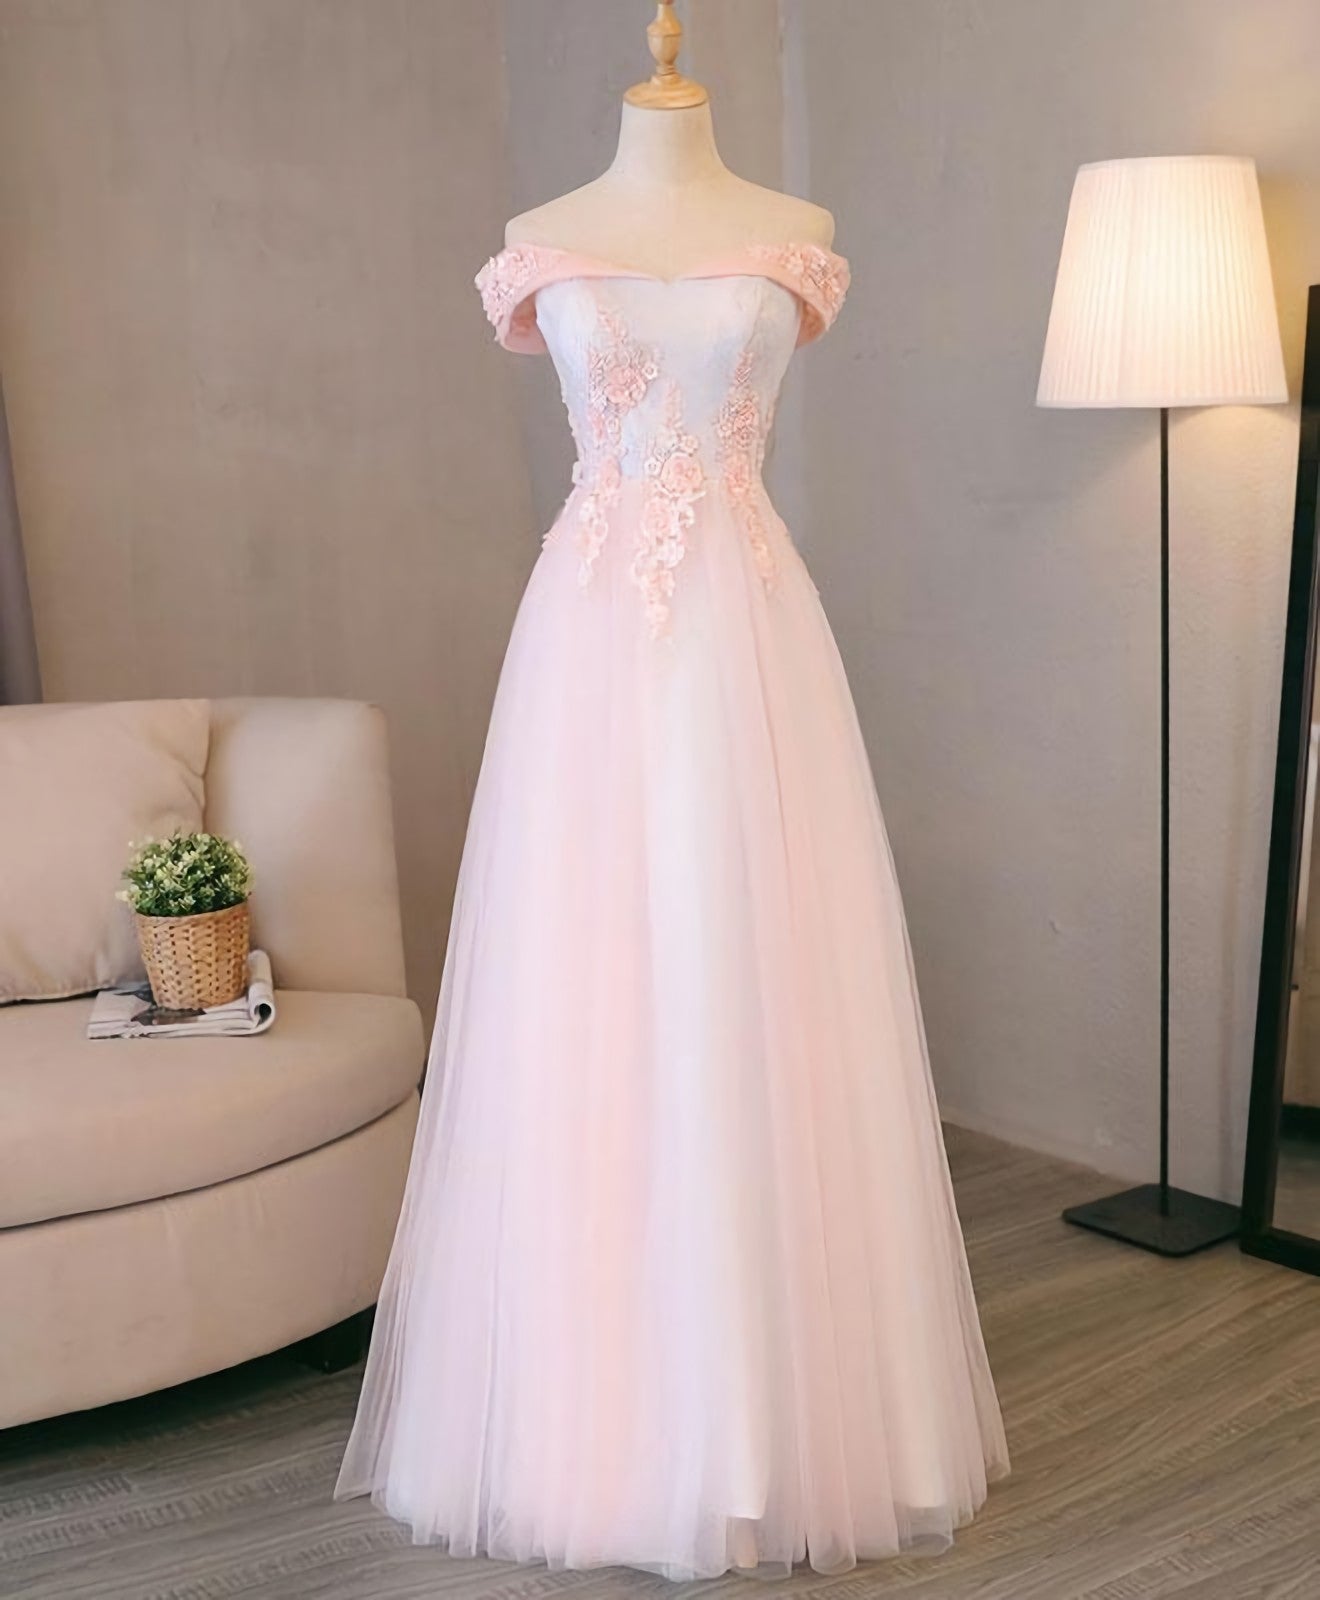 Evening Dresses For Over 57, Light Pink Lace Off Shoulder Lonng Prom Dress, Pink Evening Dress